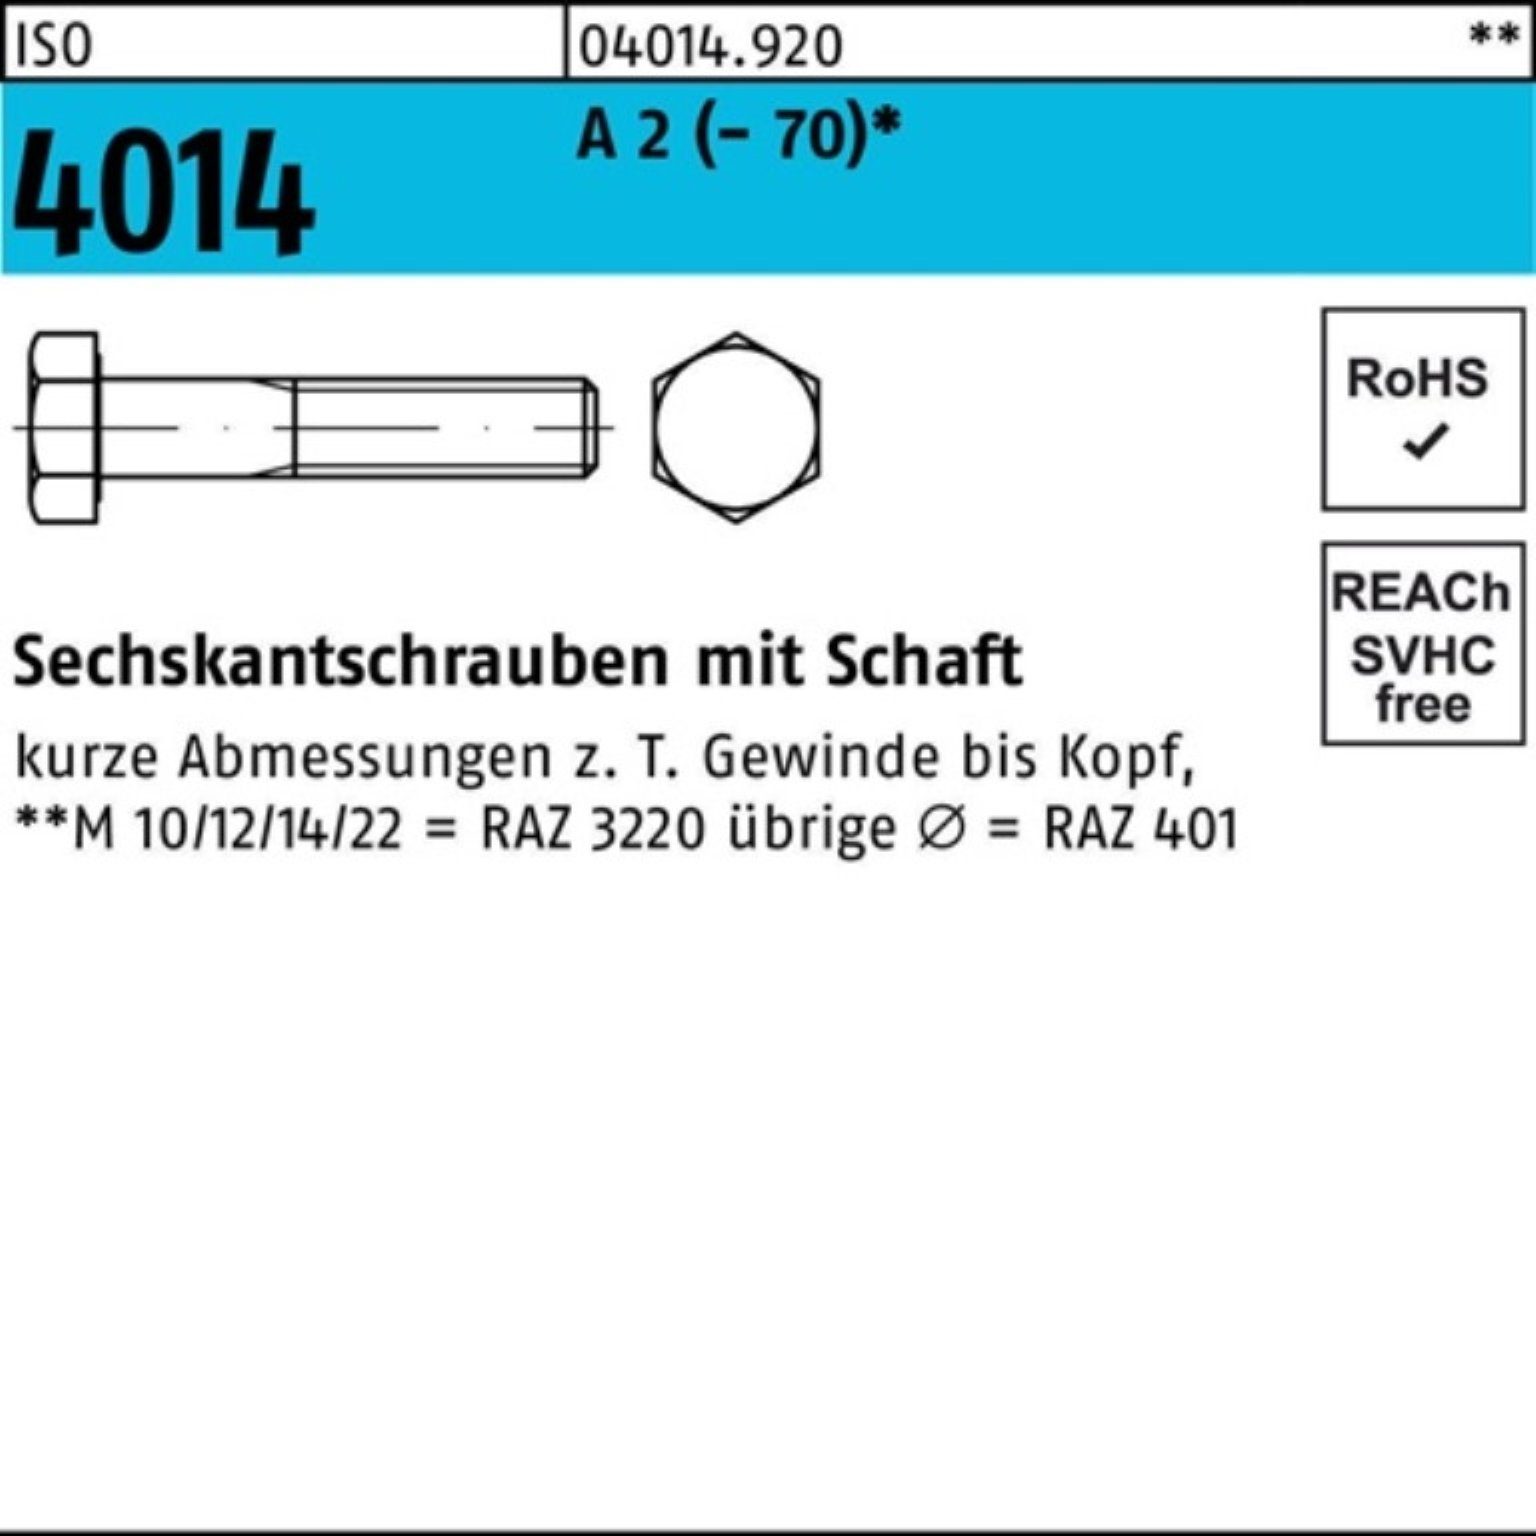 4014 Sechskantschraube Sechskantschraube (70) M10x Bufab 2 Schaft A 100er Pack St 50 55 ISO